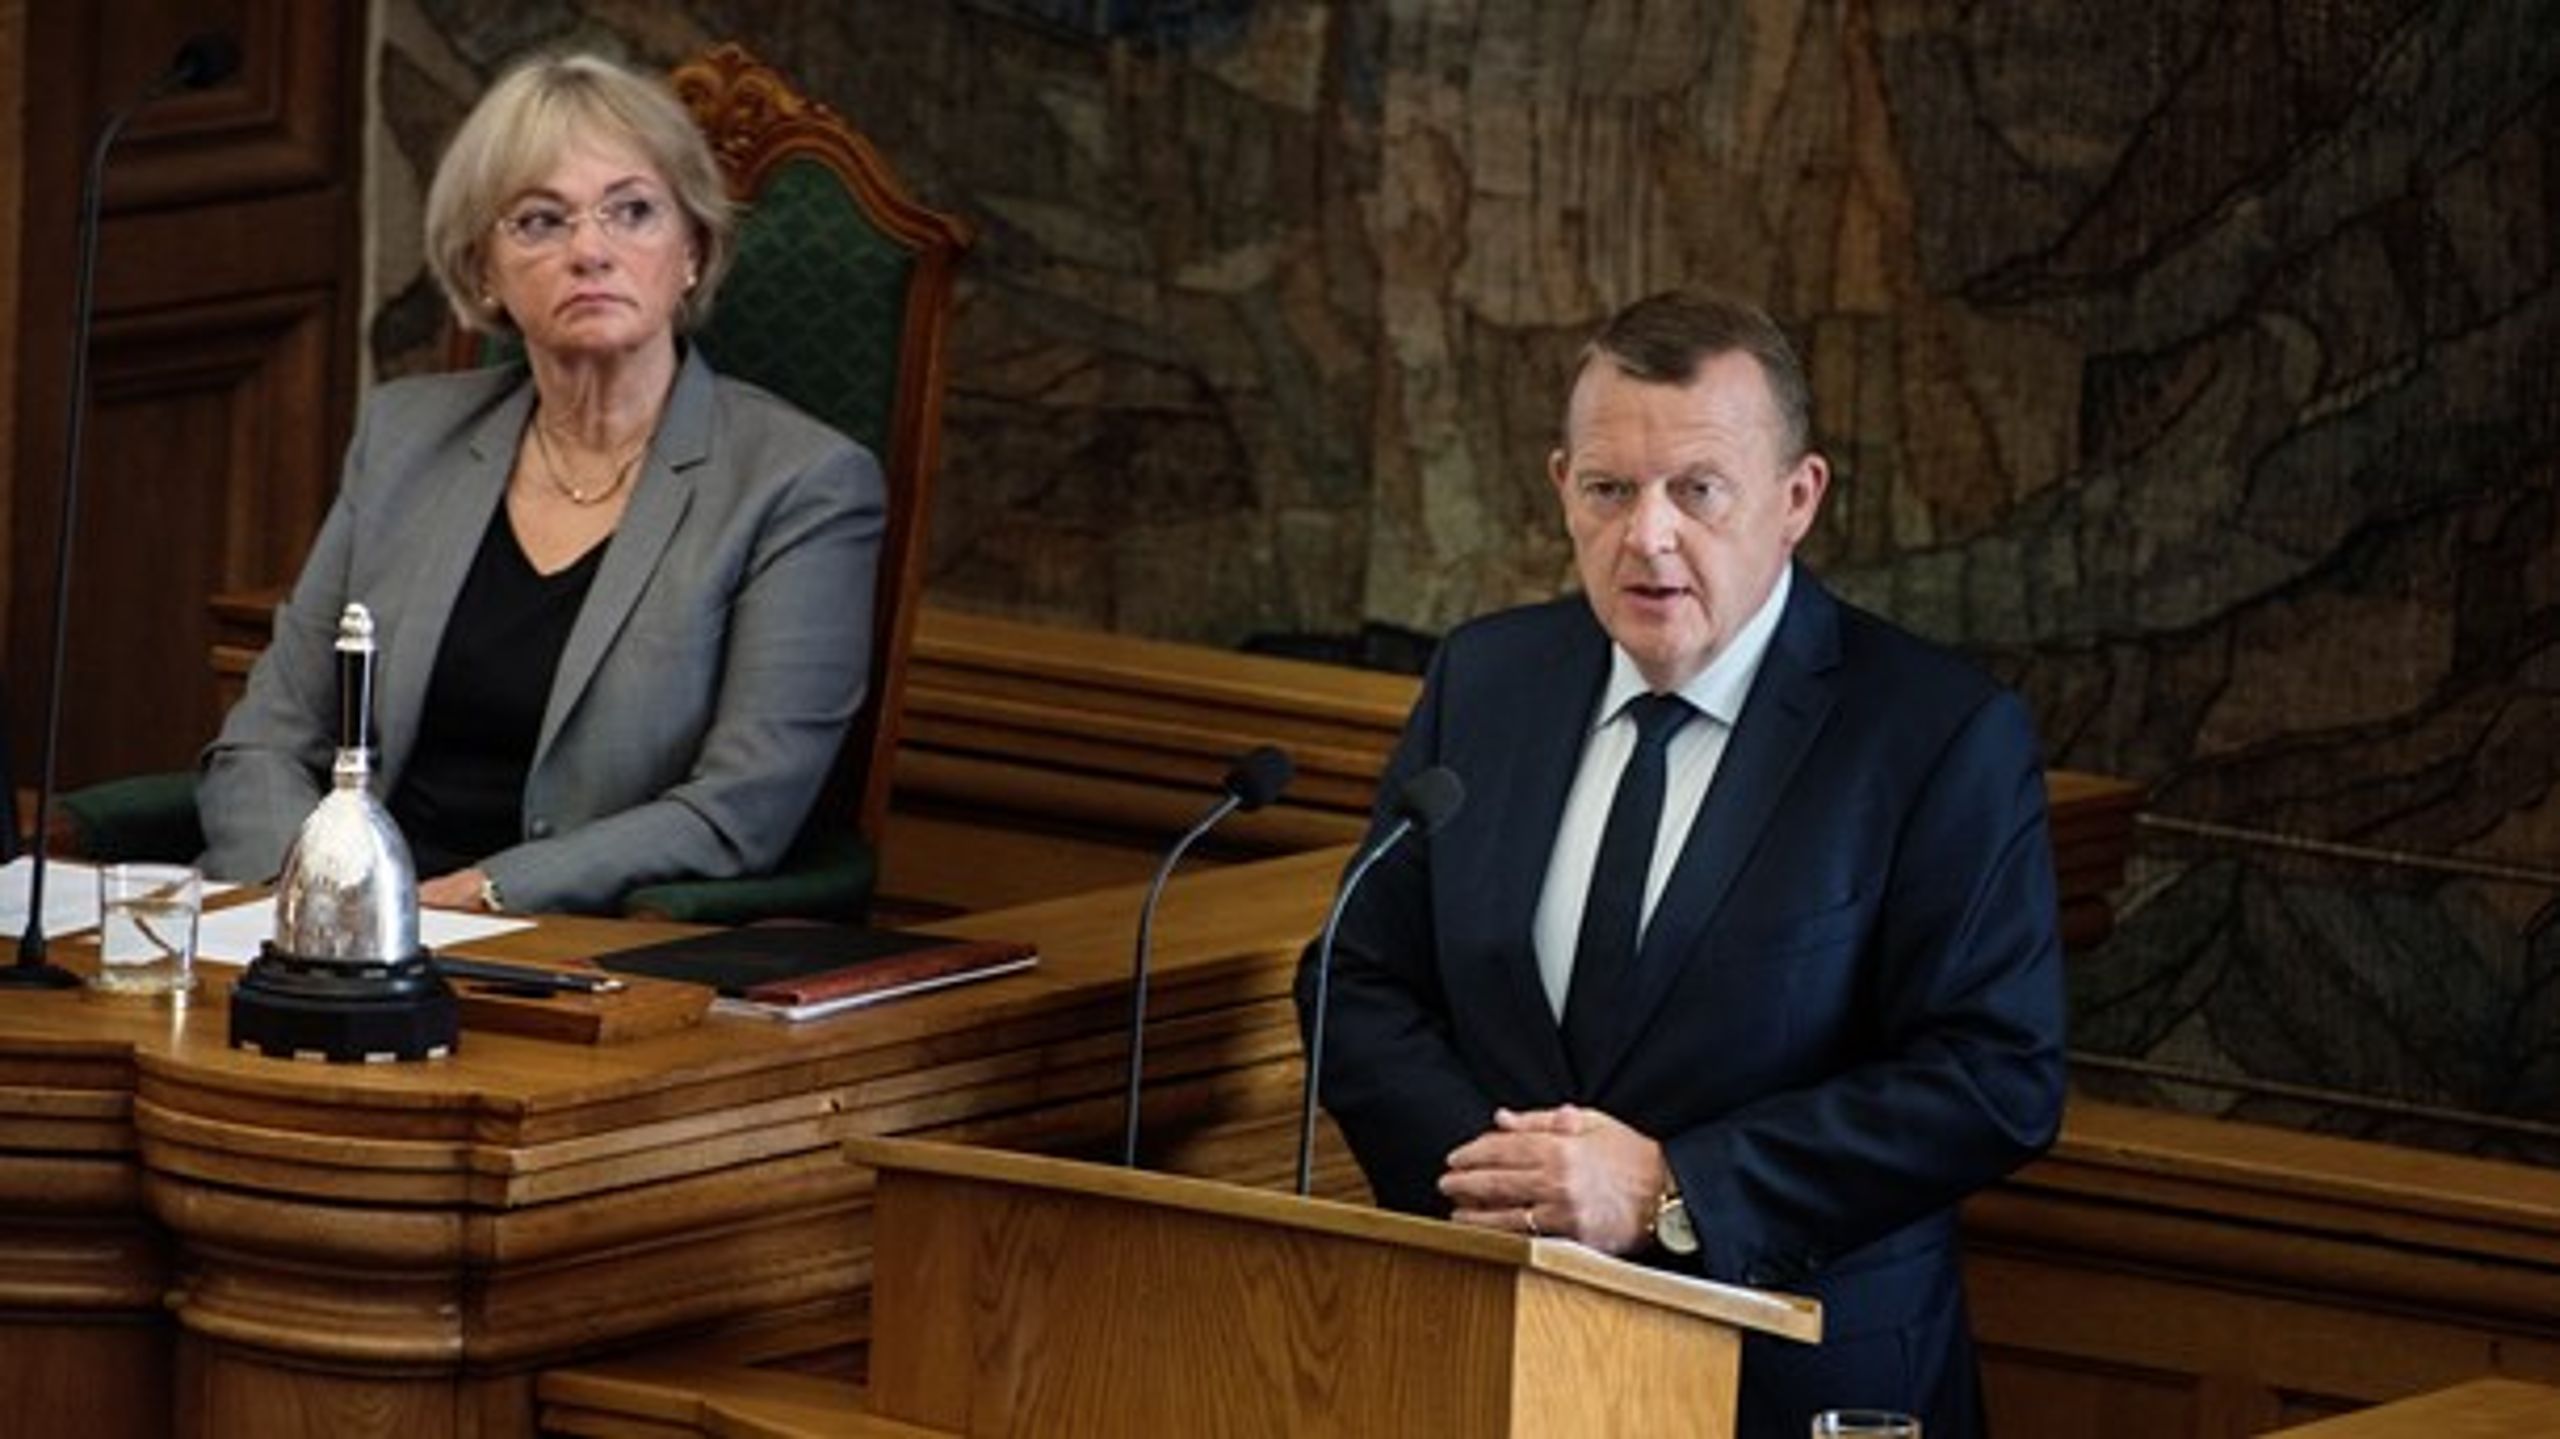 Statsminister Lars Løkke Rasmussen&nbsp;på talerstolen ved Folketingets afslutningsdebat 2016.&nbsp;